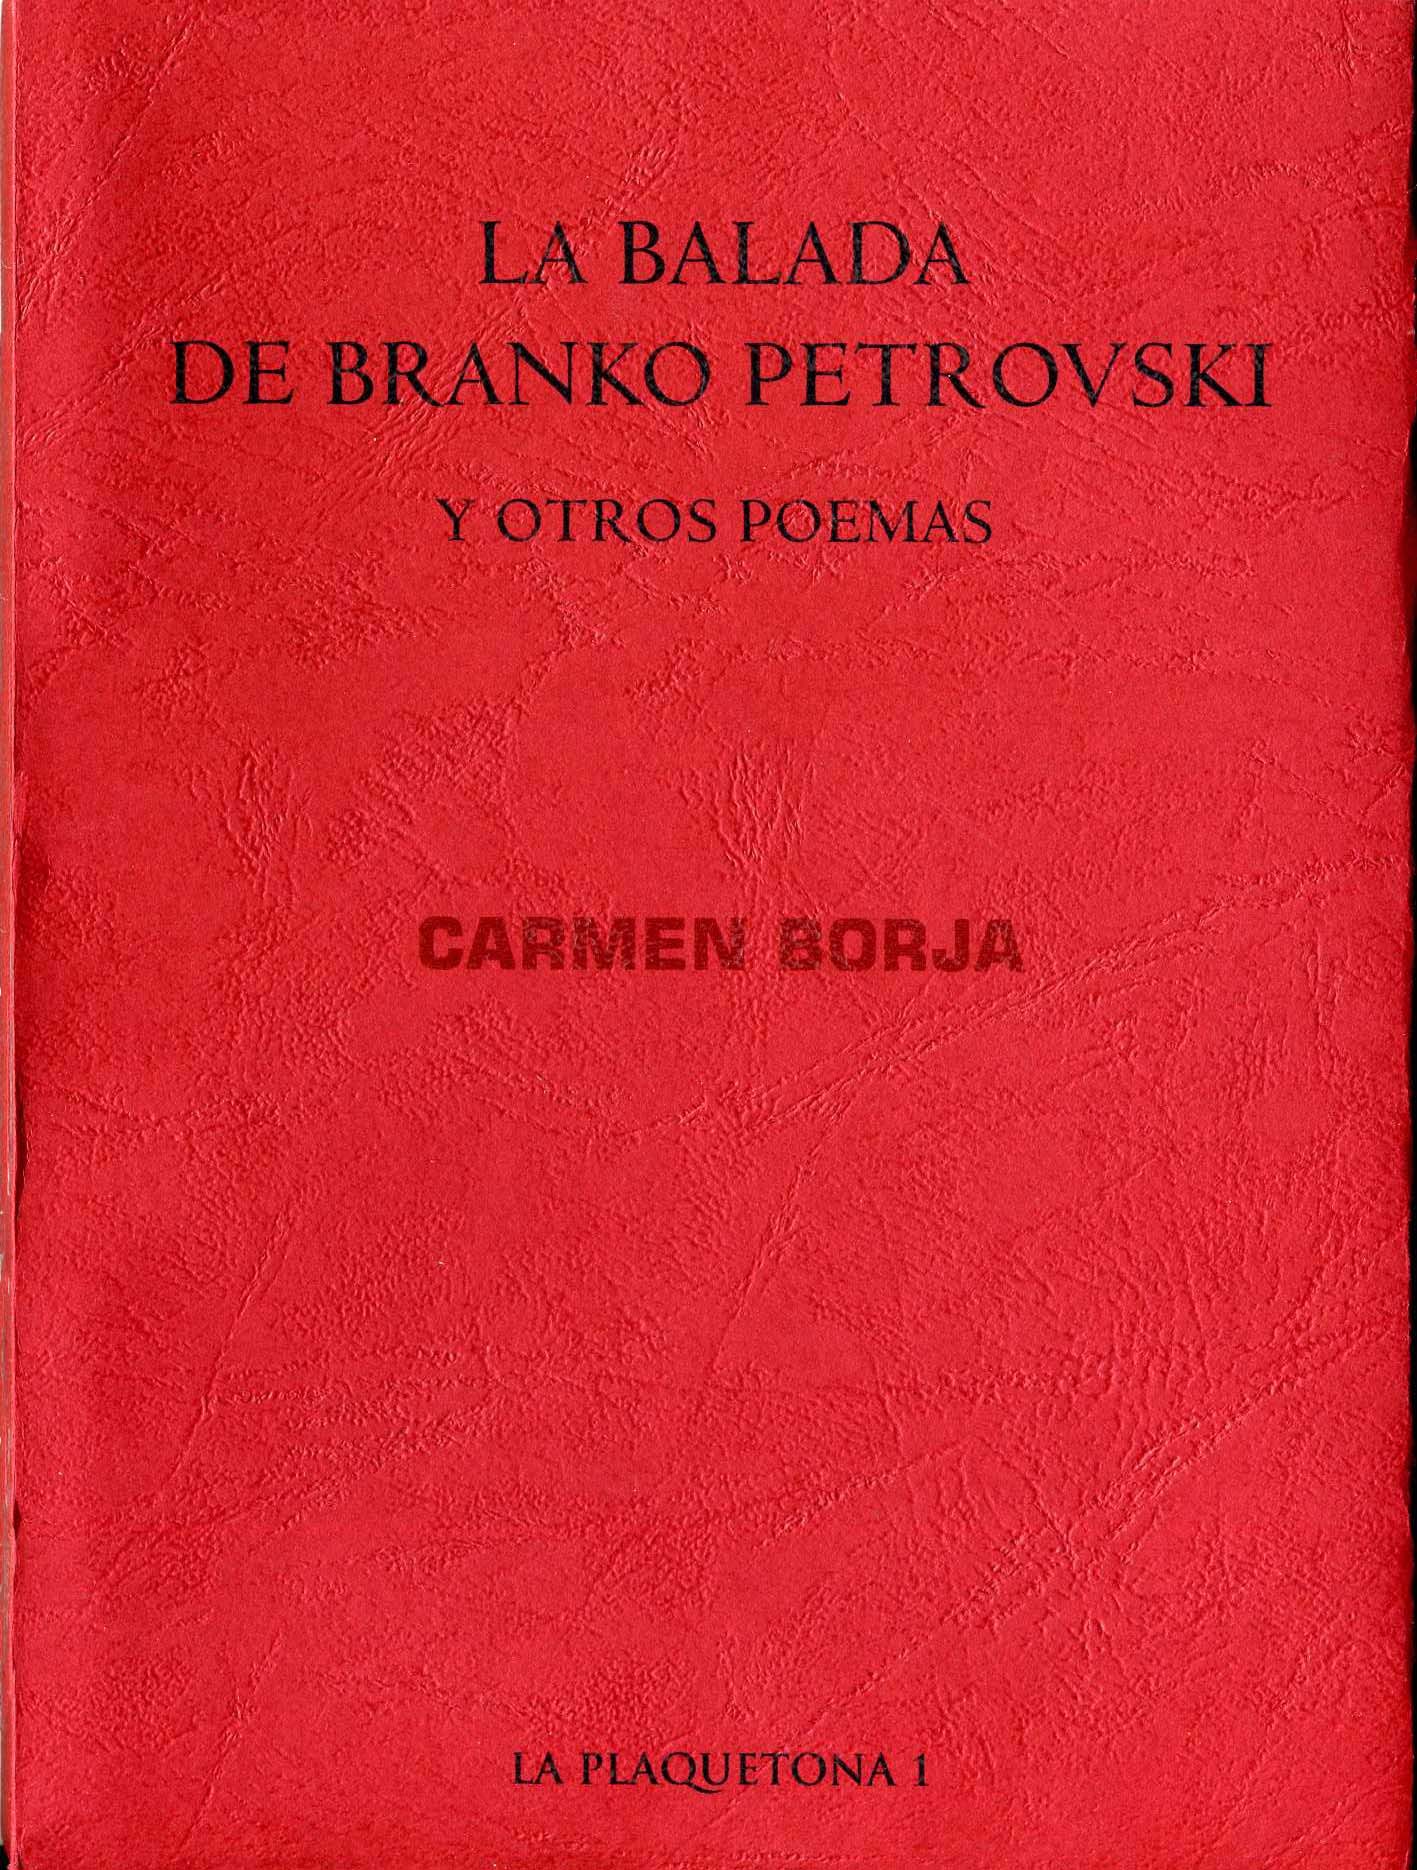 La balada de Branko Petrovski